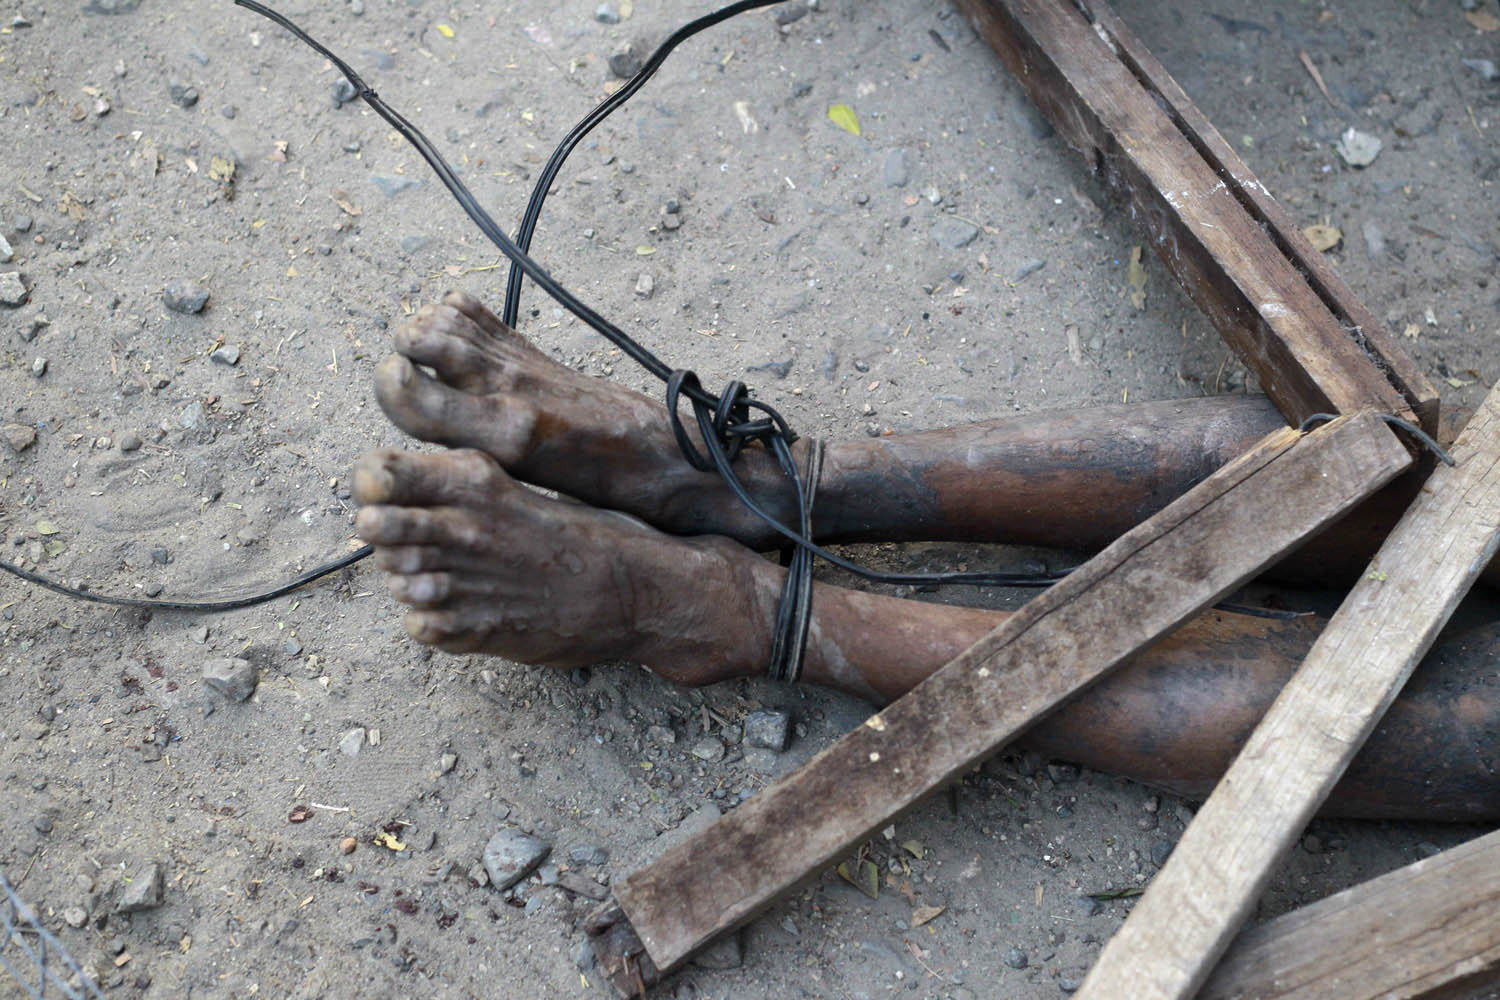 A body is seen on a street in Meikhtila